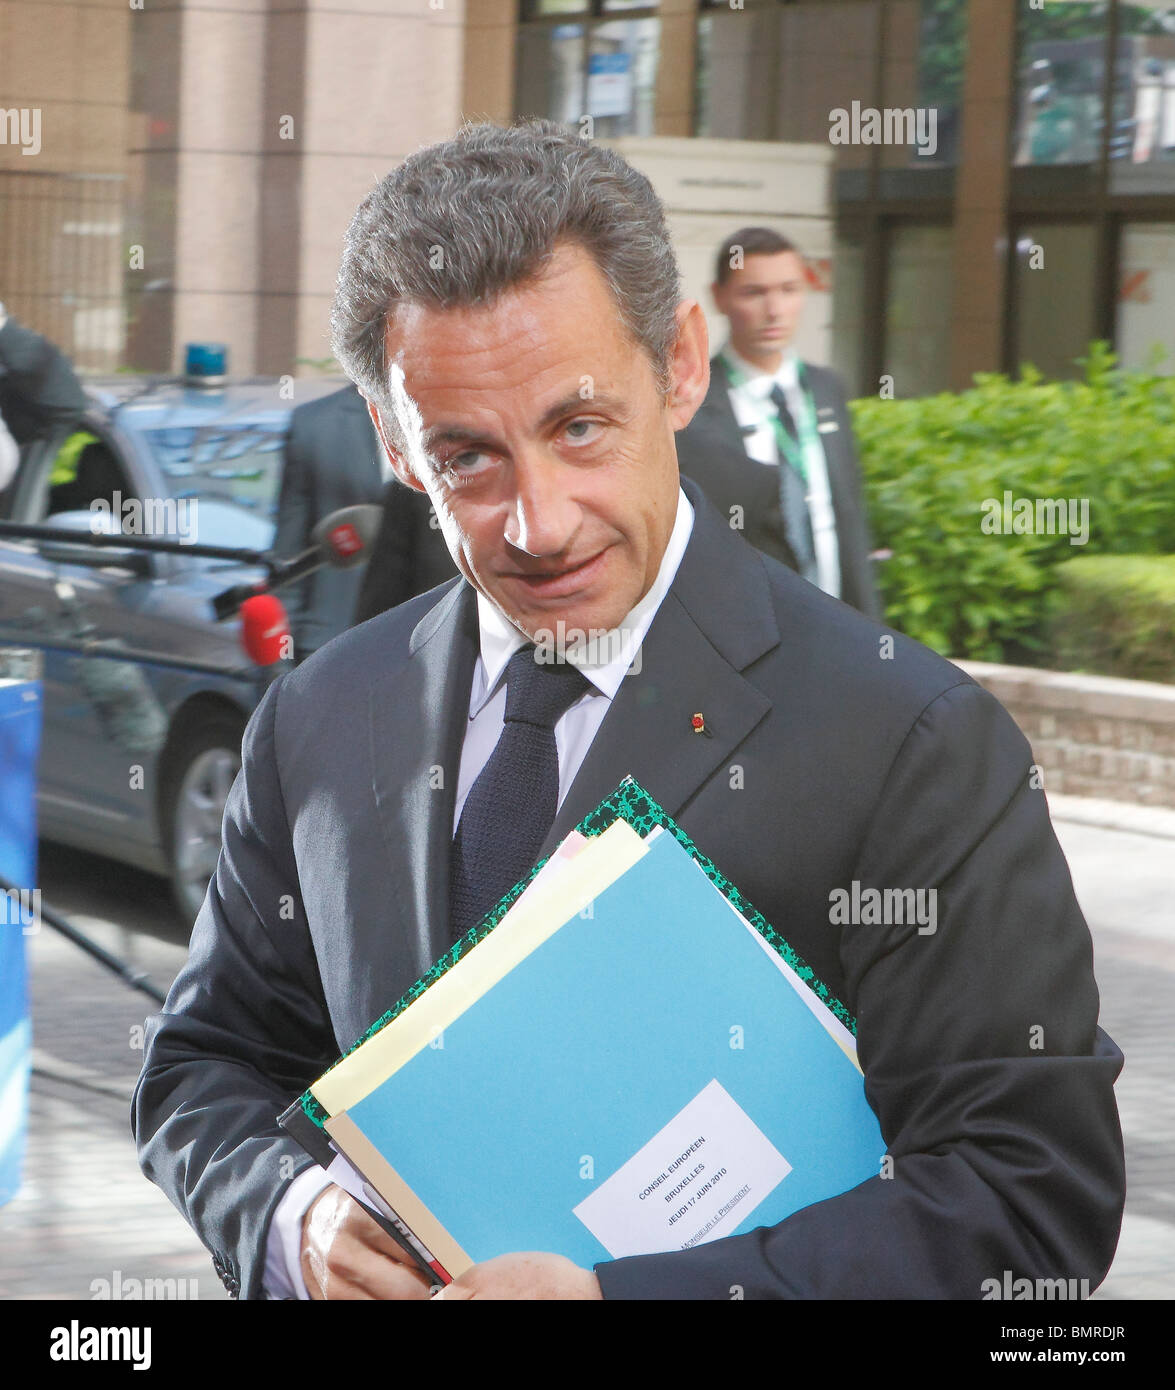 Le Premier ministre français Nicolas Sarkozy arrivant au Conseil européen des ministres à Bruxelles le 17 juin 2010 Banque D'Images